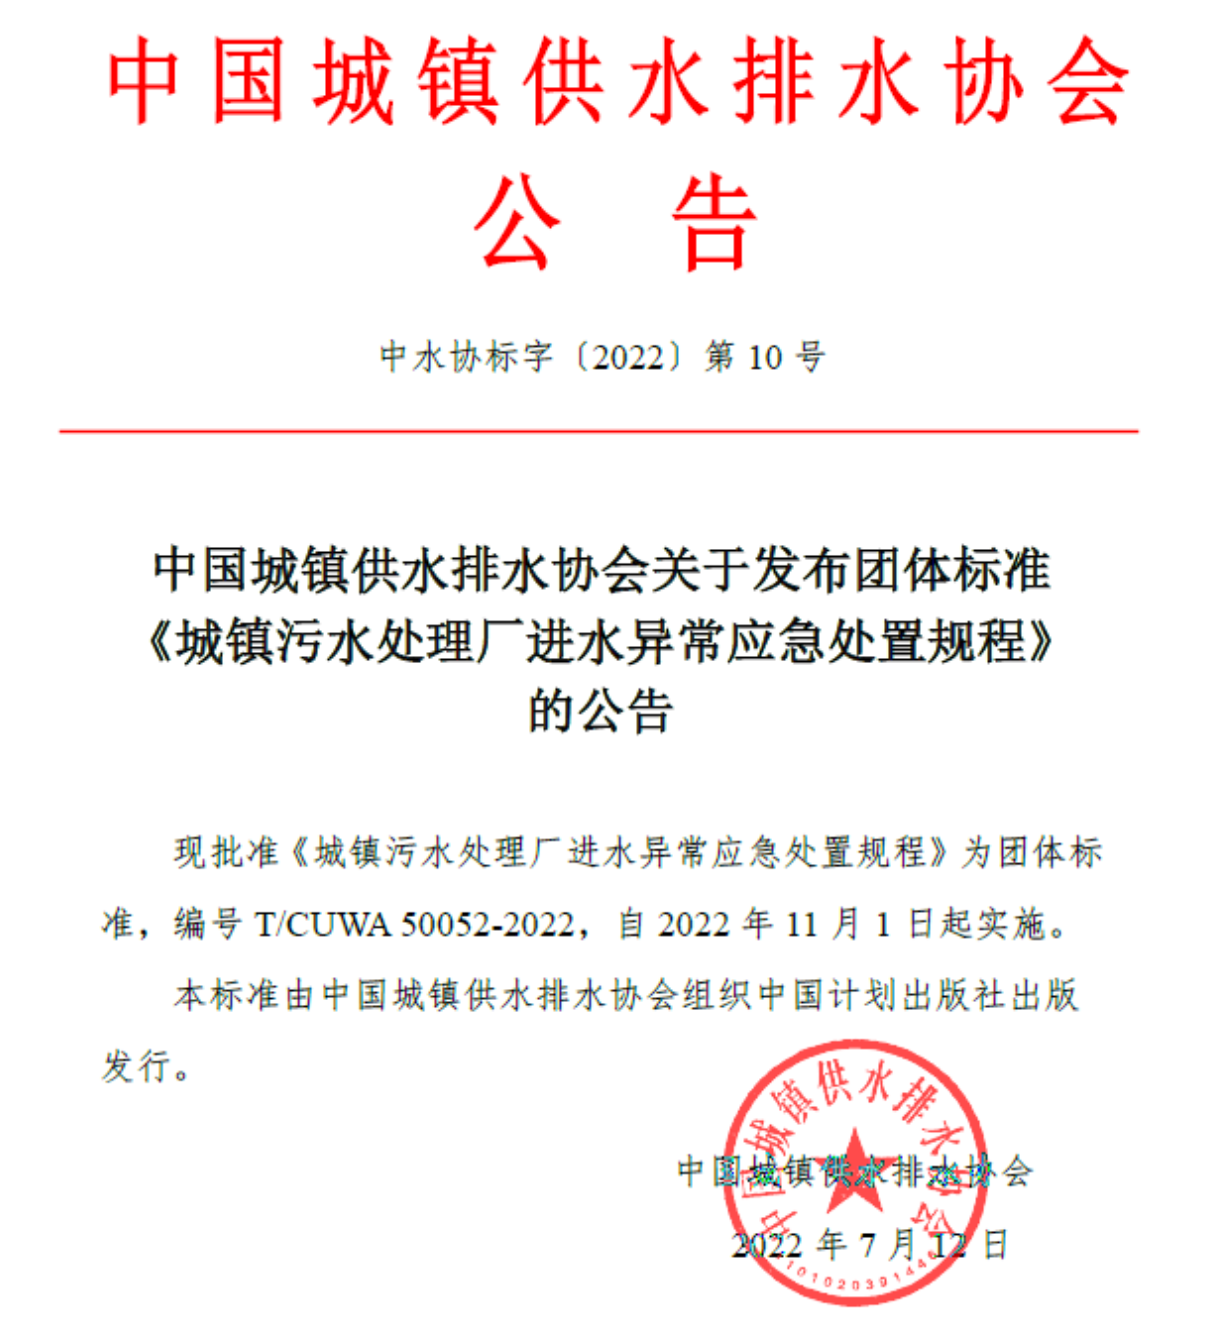 中国城镇供水排水协会关于发布团体标准《城镇污水处理厂进水异常应急处置规程 》的公告